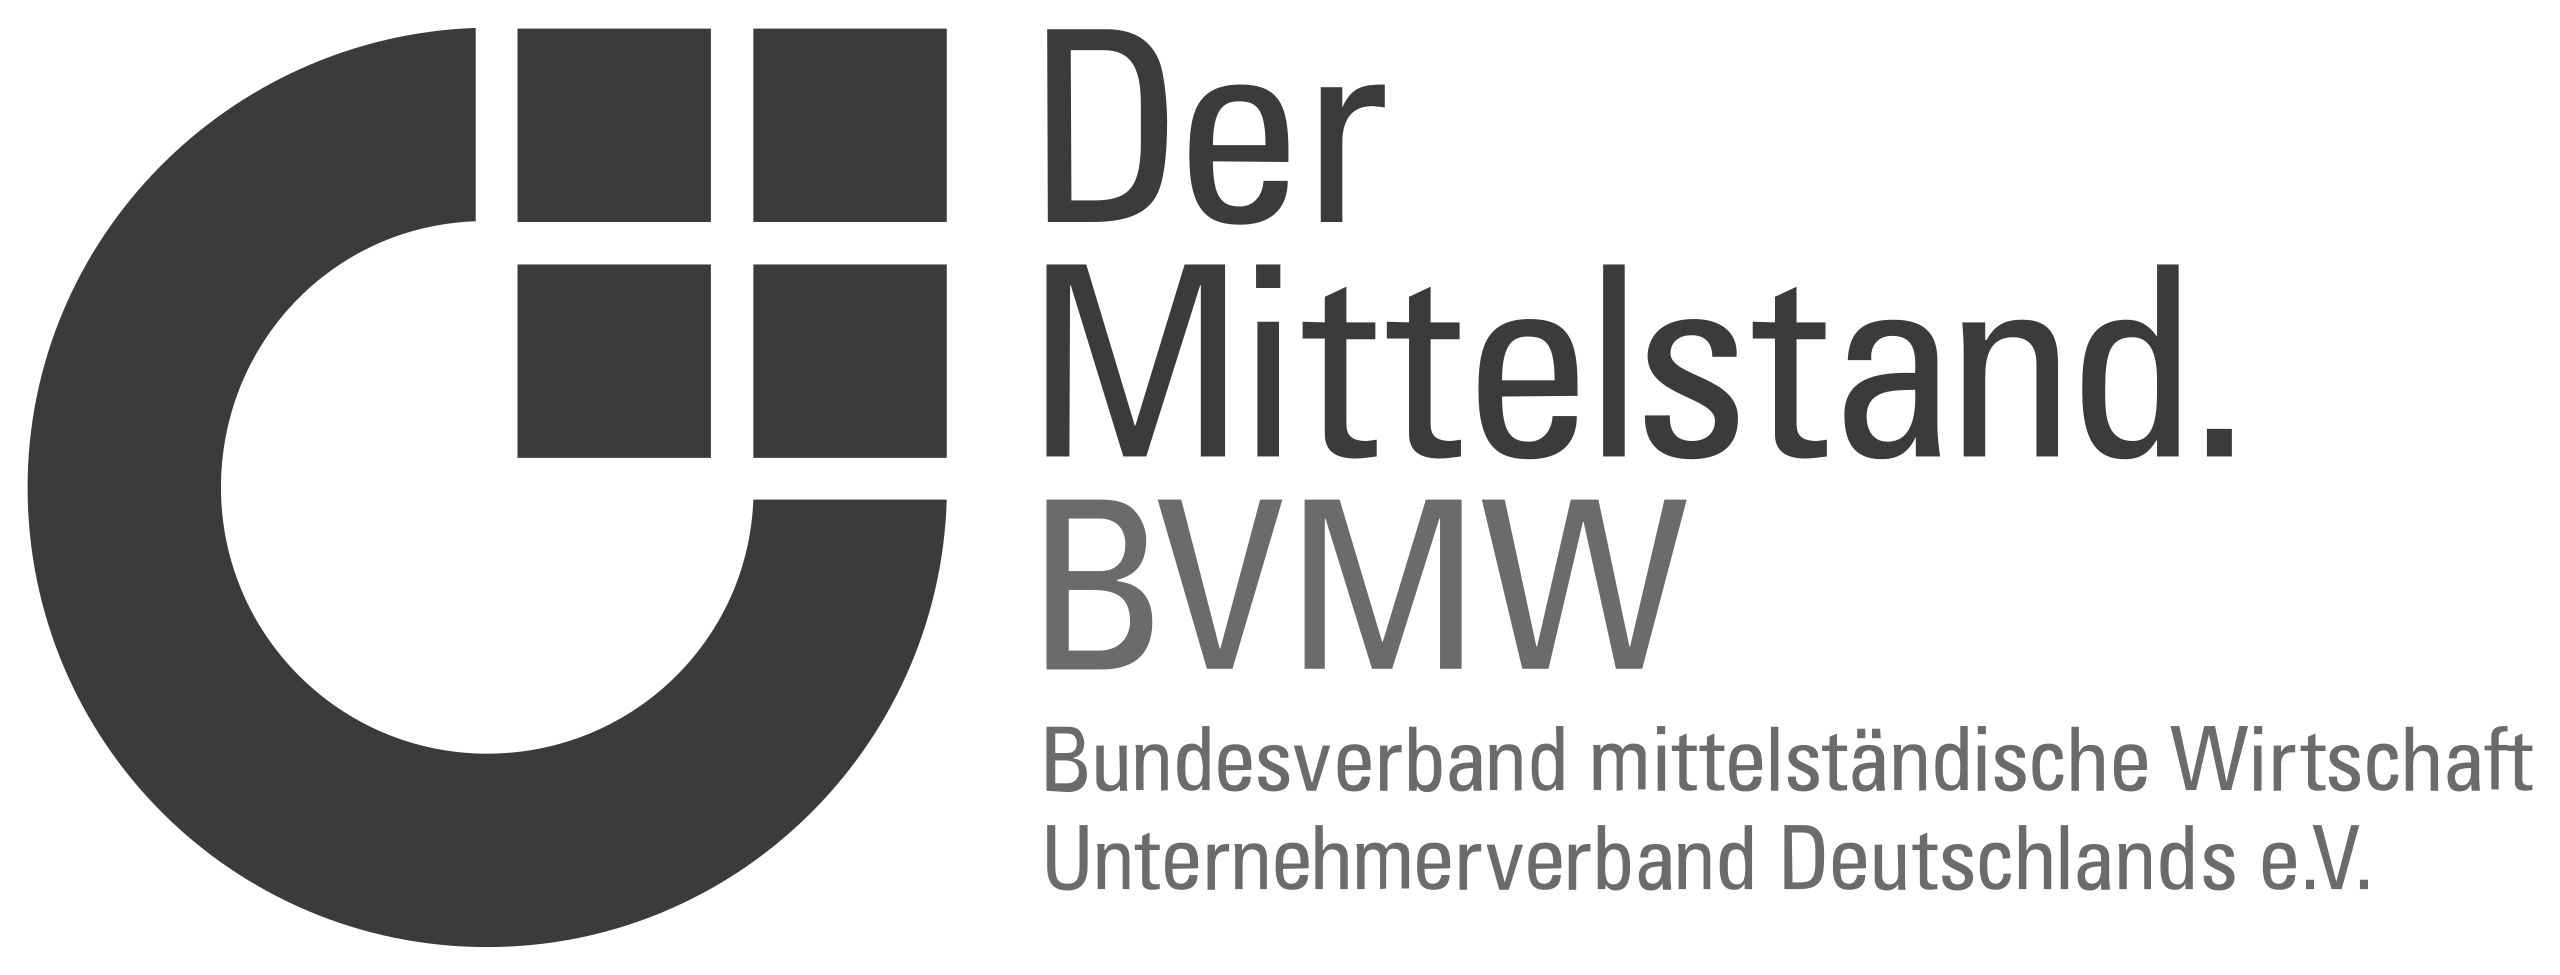 digitevo-mitgliedschaften-bvmw-logo